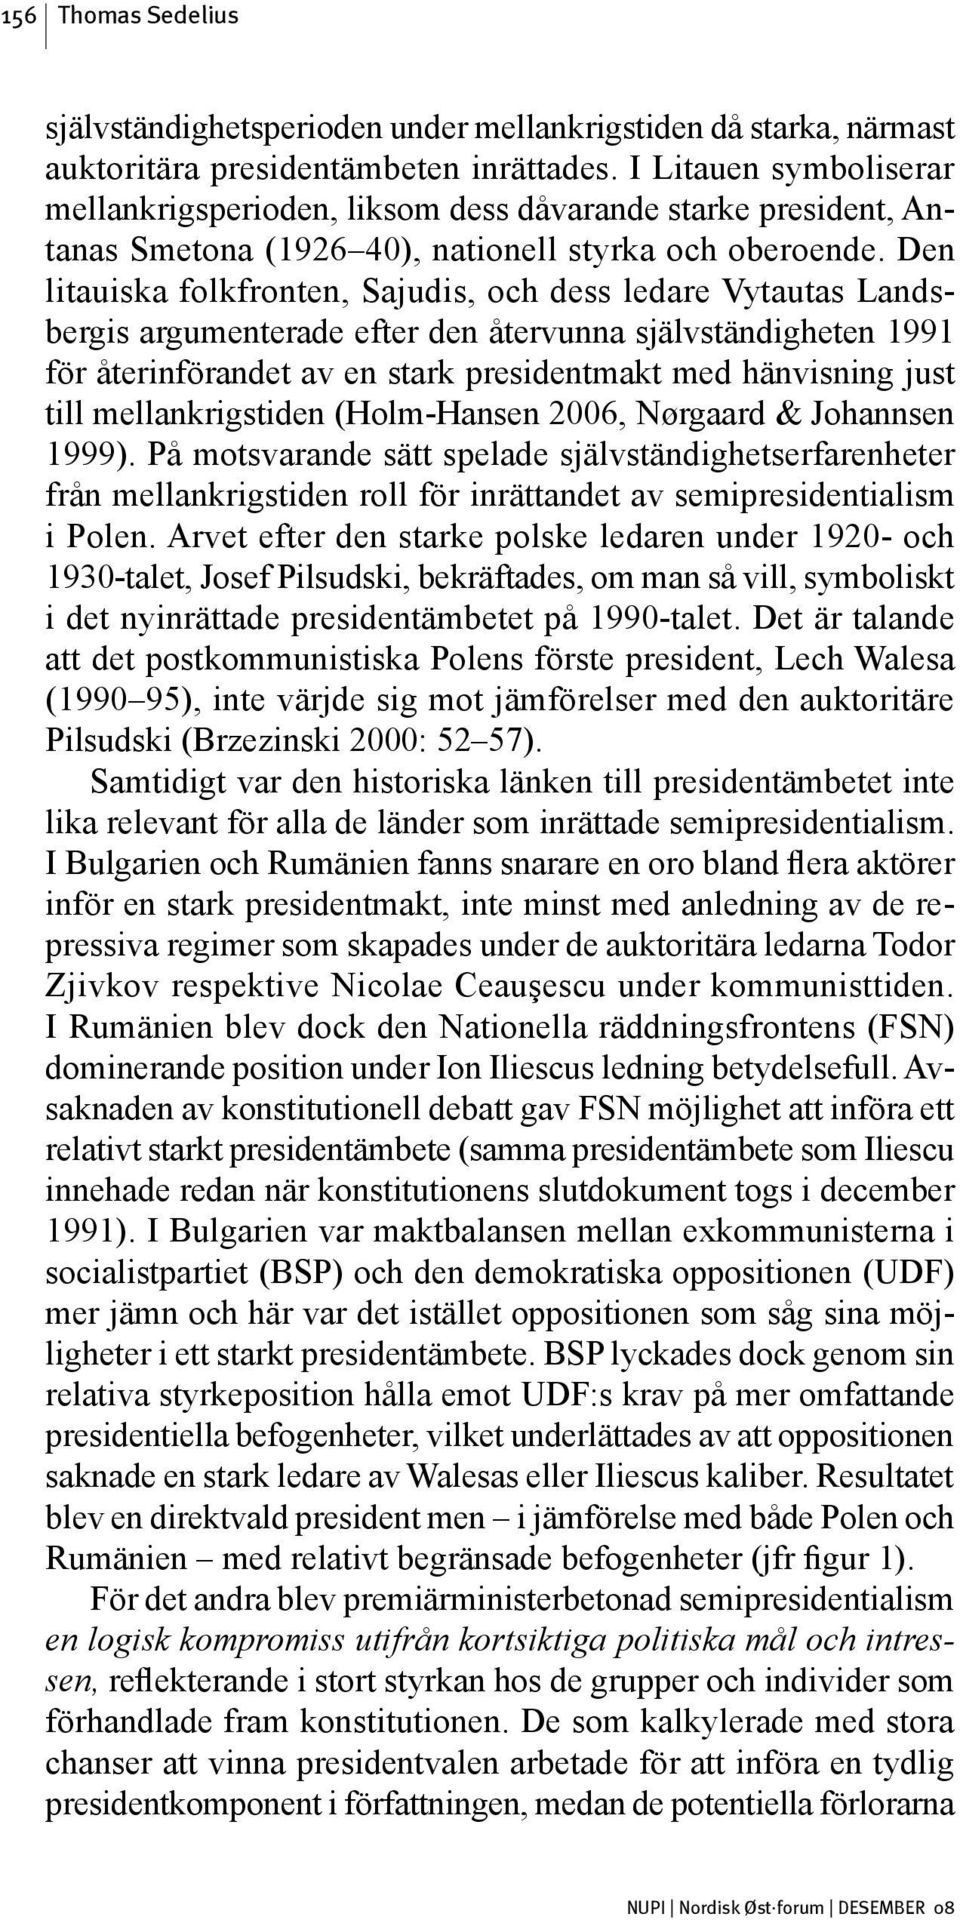 Den litauiska folkfronten, Sajudis, och dess ledare Vytautas Landsbergis argumenterade efter den återvunna självständigheten 1991 för återinförandet av en stark presidentmakt med hänvisning just till